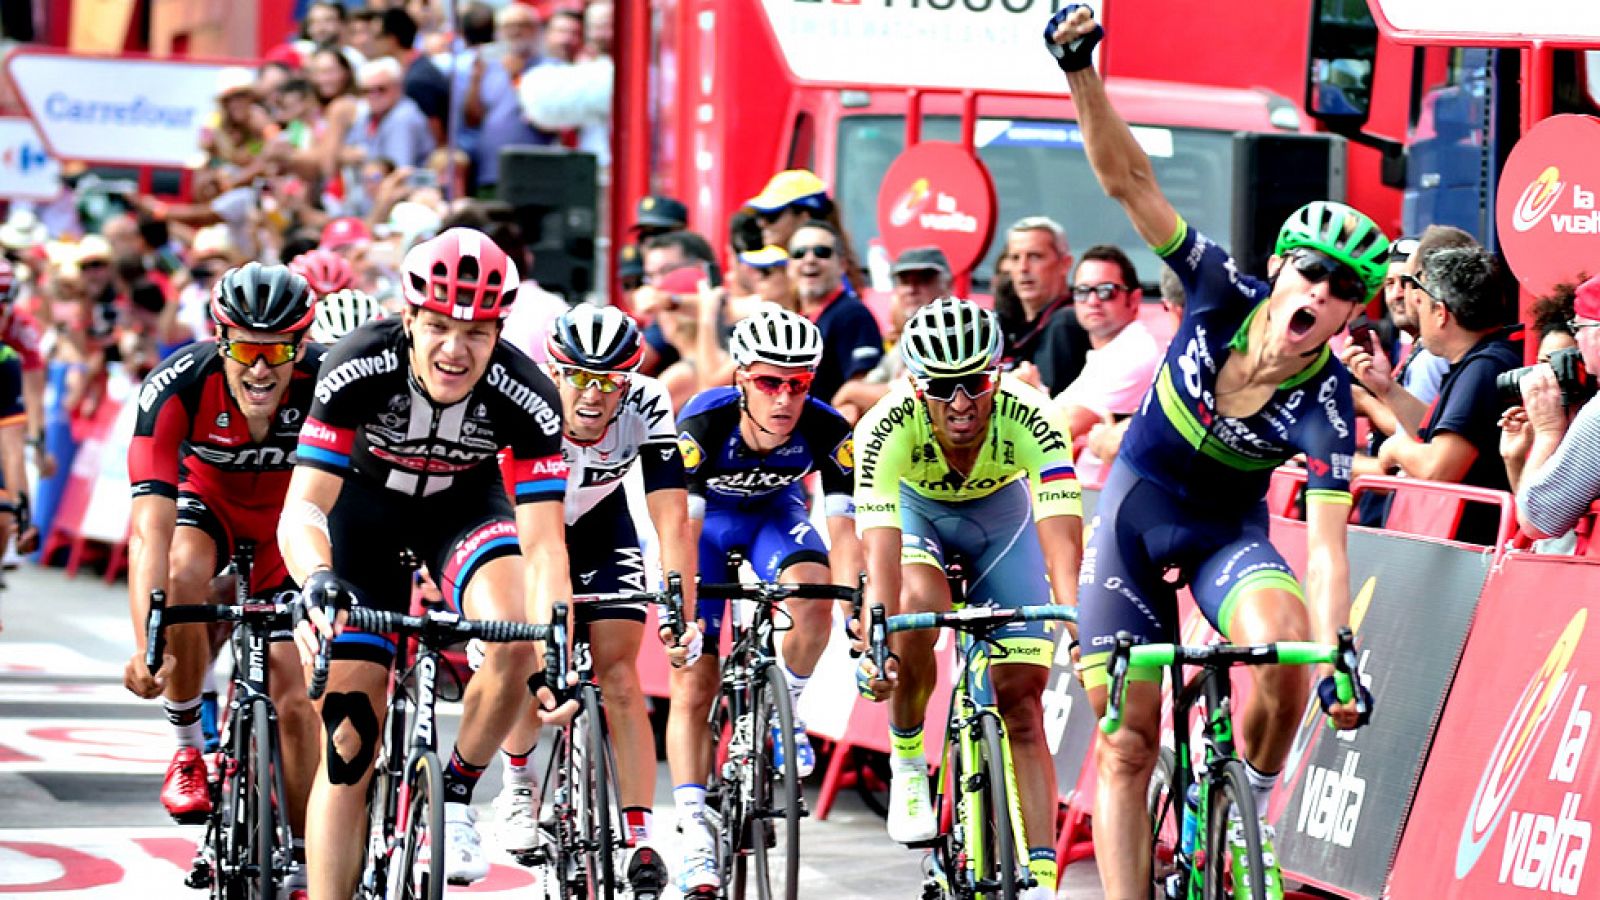 El ciclista danés Magnus Cort Nielsen (Orica-BikeExchange) se ha impuesto este jueves en la decimoctava etapa de la Vuelta a España, disputada entre Requena y Gandía sobre 200,6 kilómetros, en un peleado sprint donde varios velocistas se metieron en